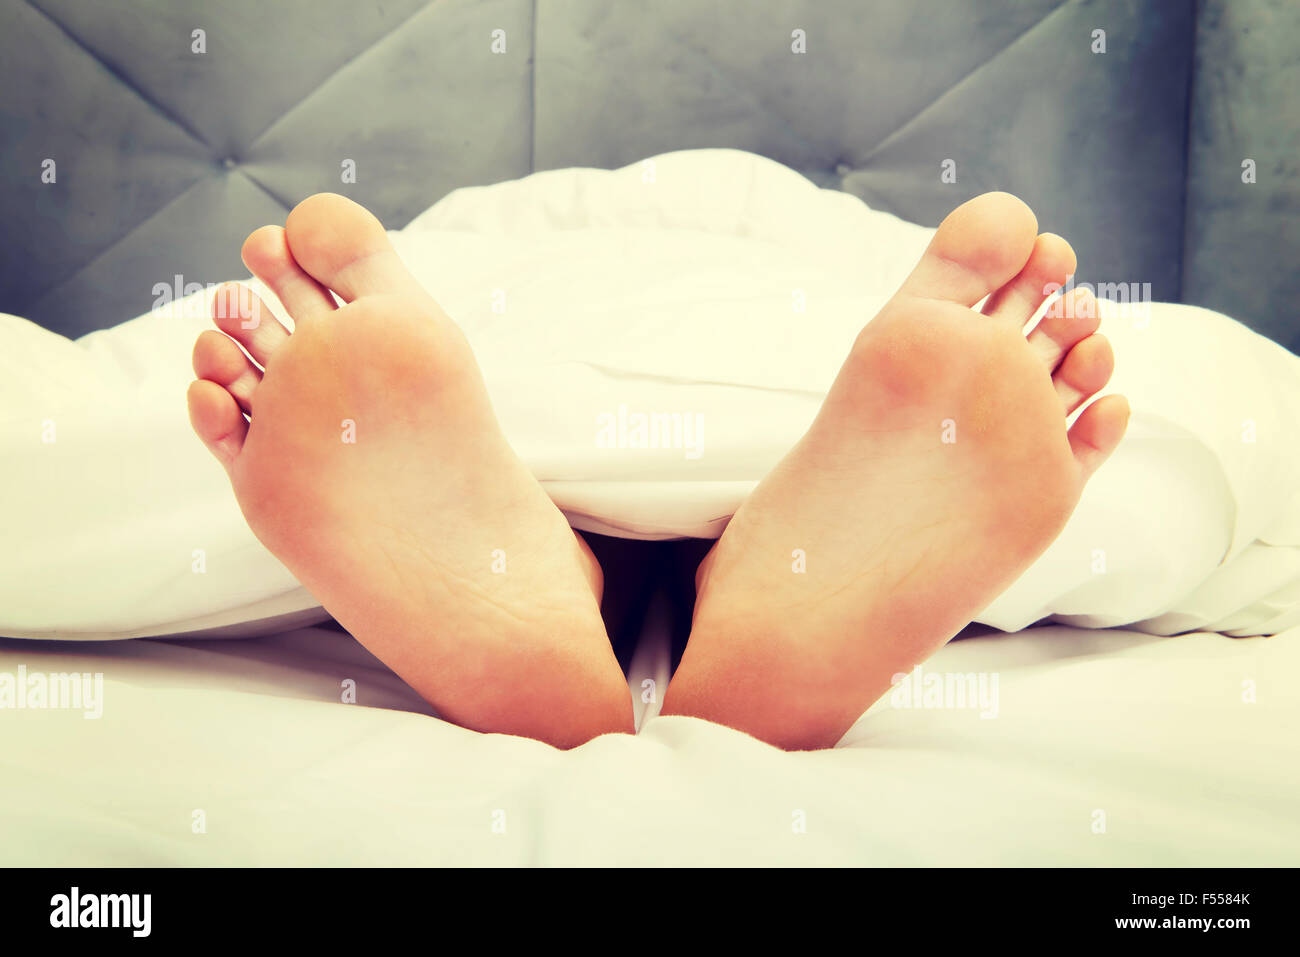 La femme nu pieds dans la chambre Photo Stock - Alamy